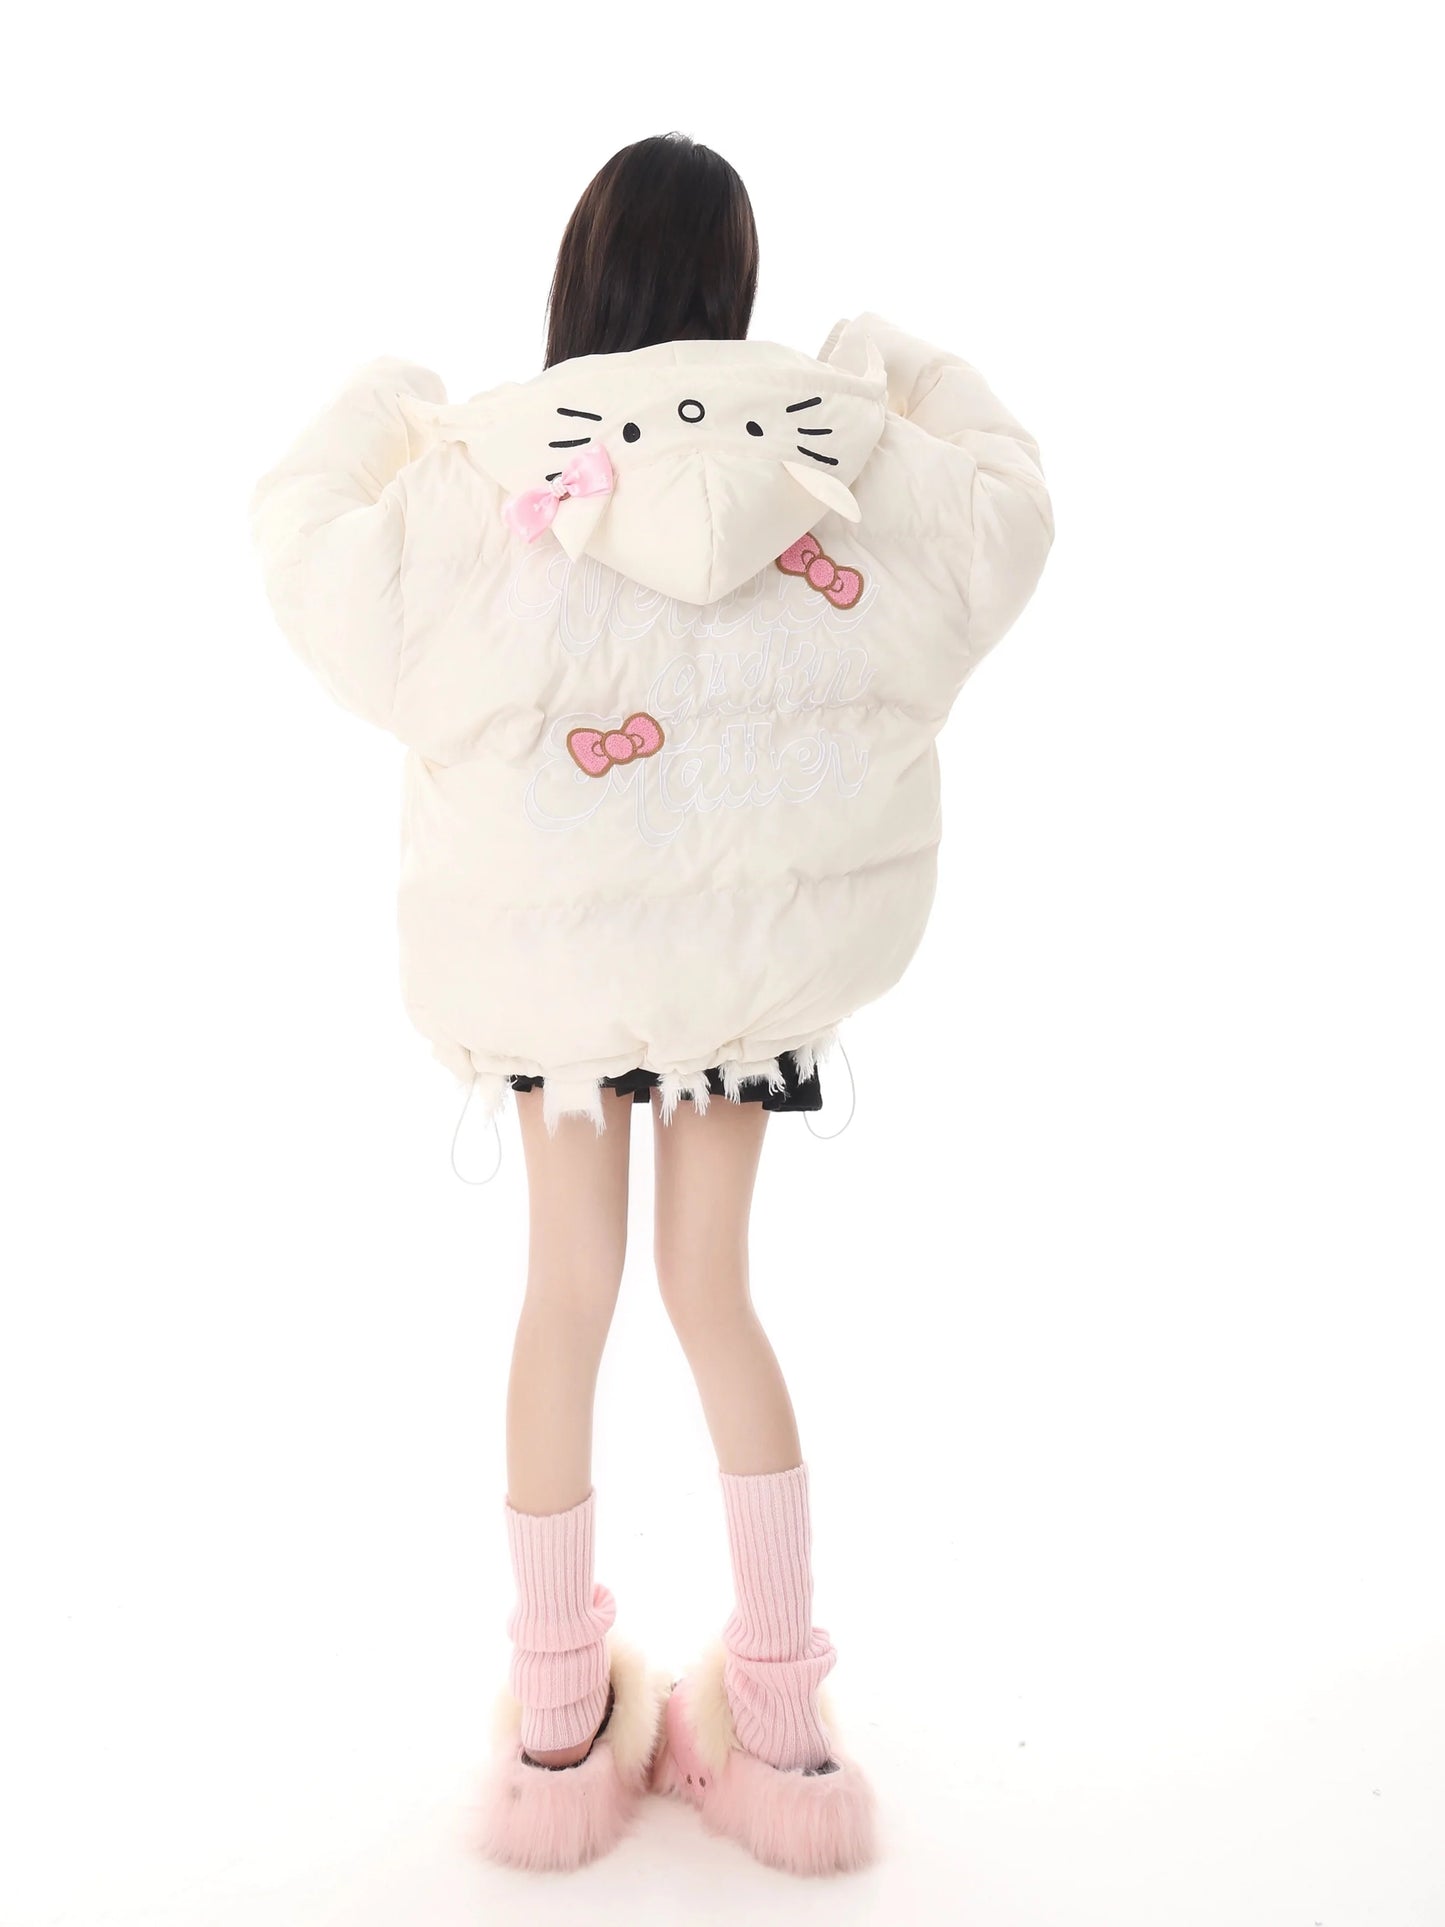 Hello Kitty Puffer Jacket